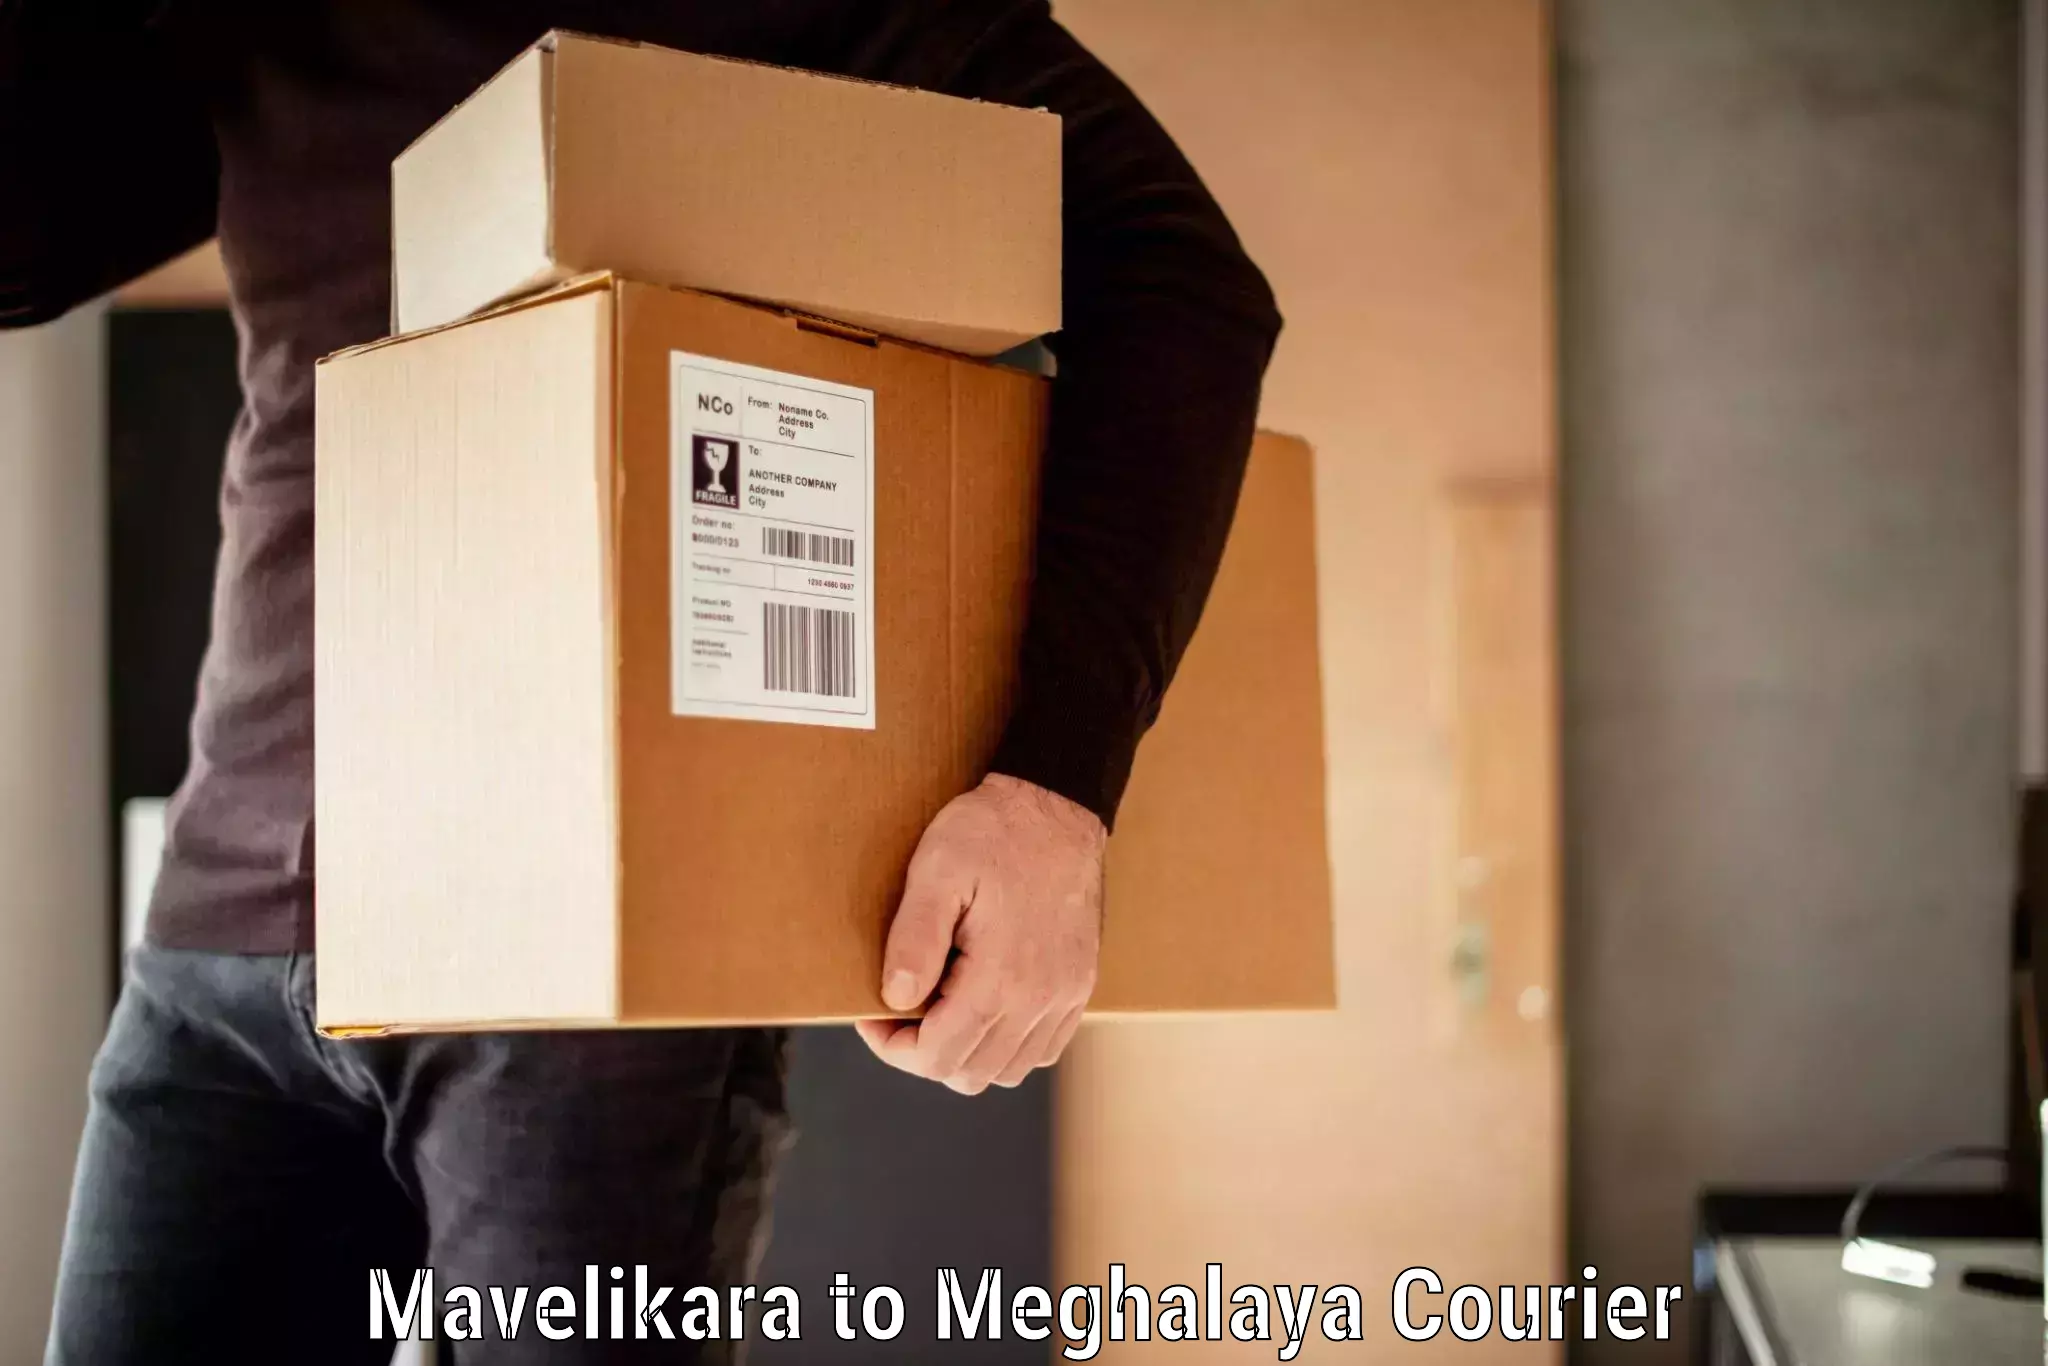 Luggage delivery app Mavelikara to Shillong